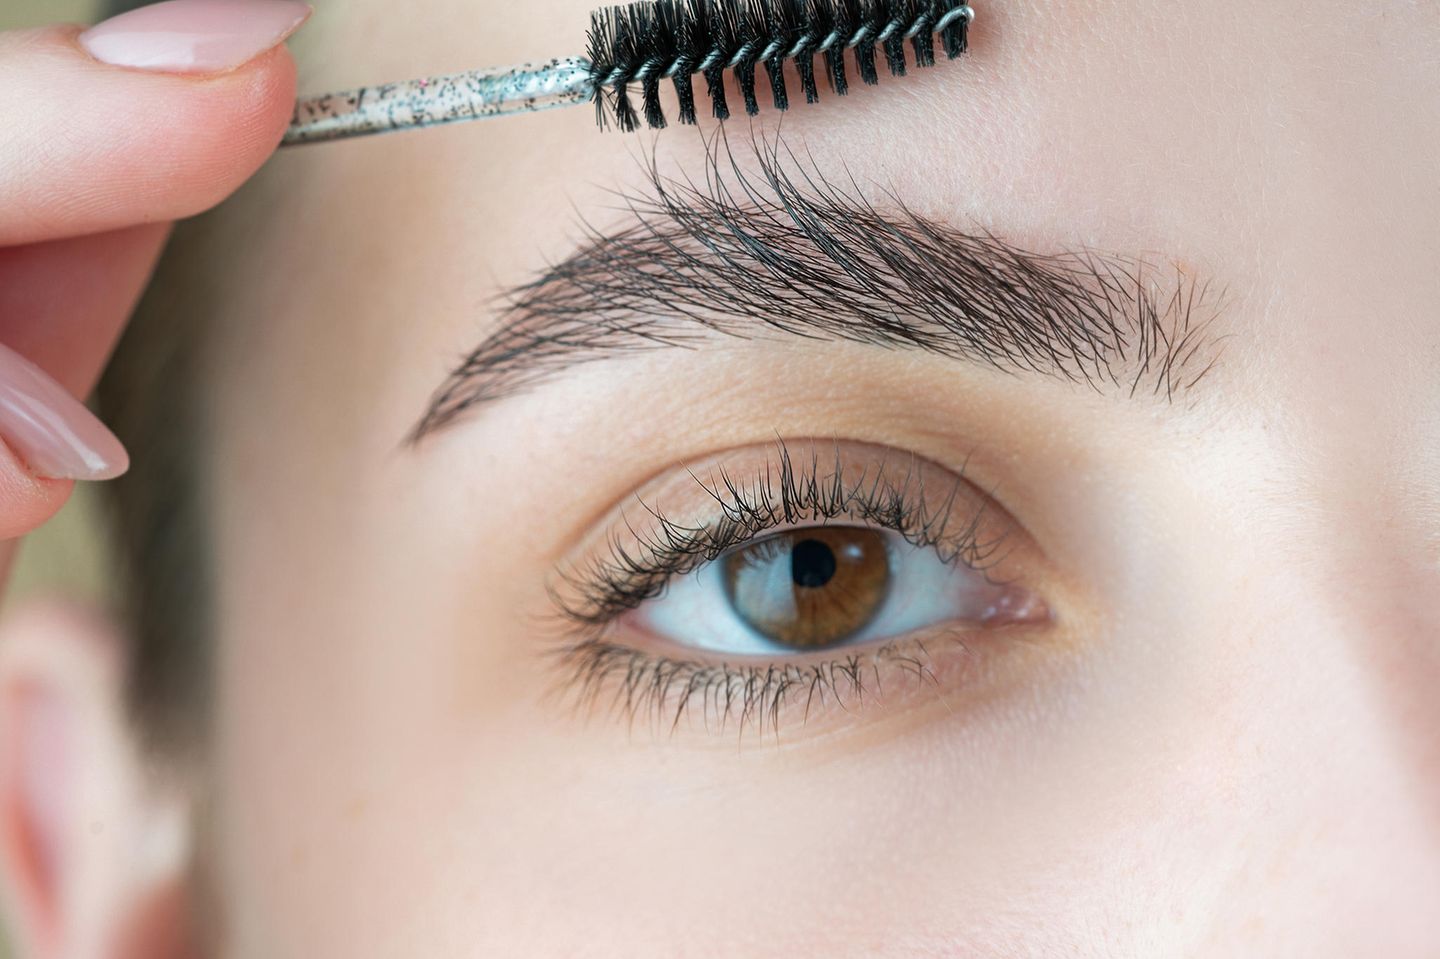 Wachsen Augenbrauen nach?: Eine Frau bürstet ihre rechte Augenbraue nach oben